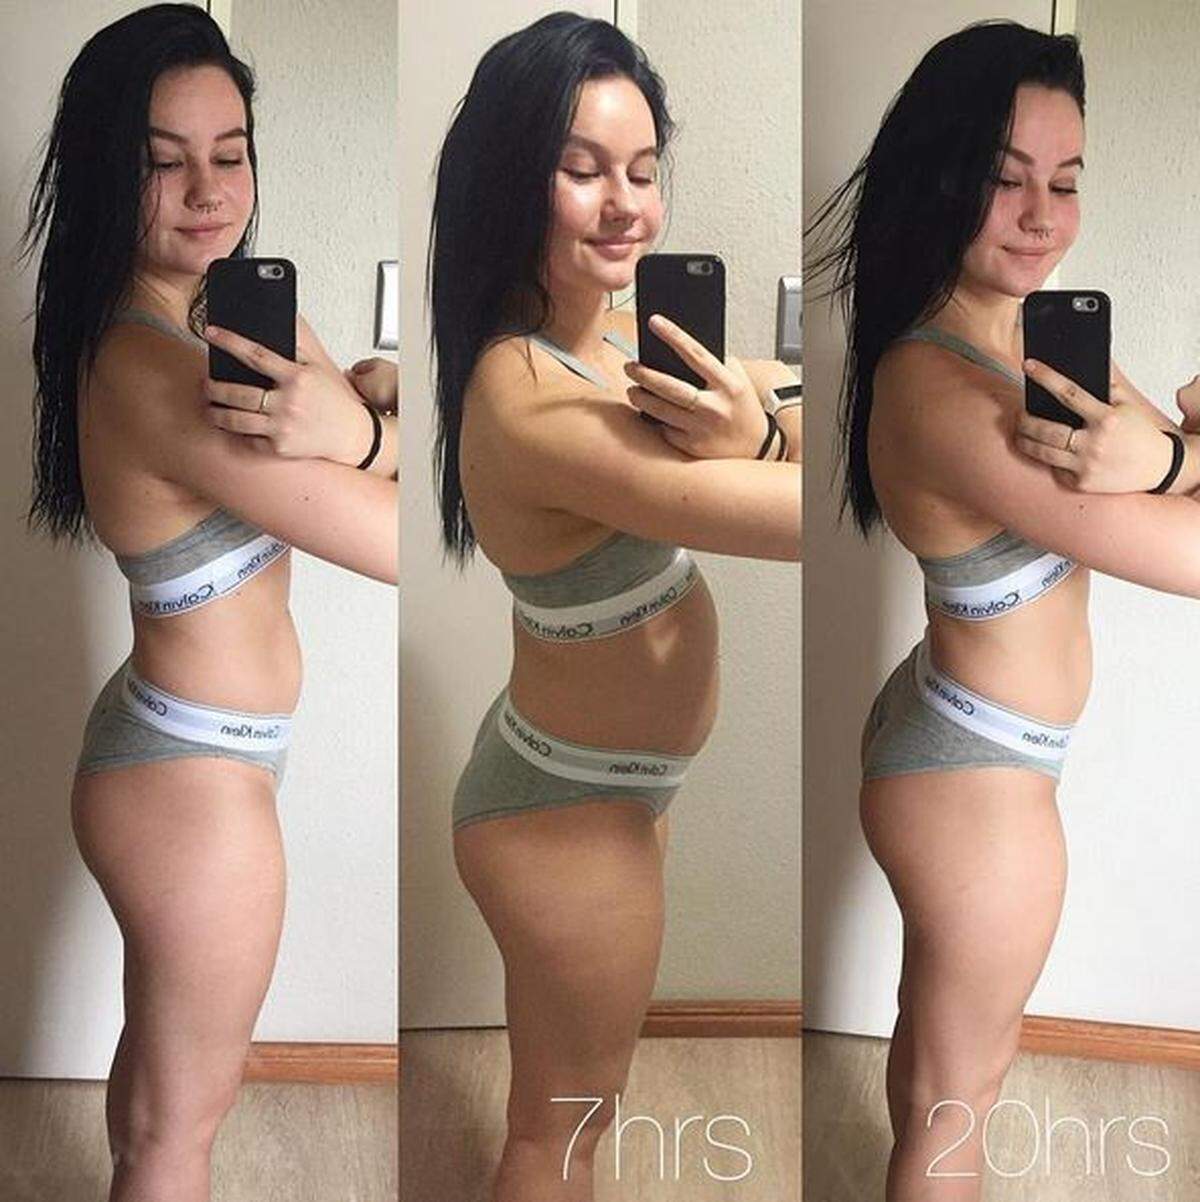 Wie relativ das Thema Bauchumfang ist, zeigte auch Instagram-Nutzerin Sara Puhto - mit drei Fotos, die sie zu unterschiedlichen Zeiten nach einem Festessen aufgenommen hatte.